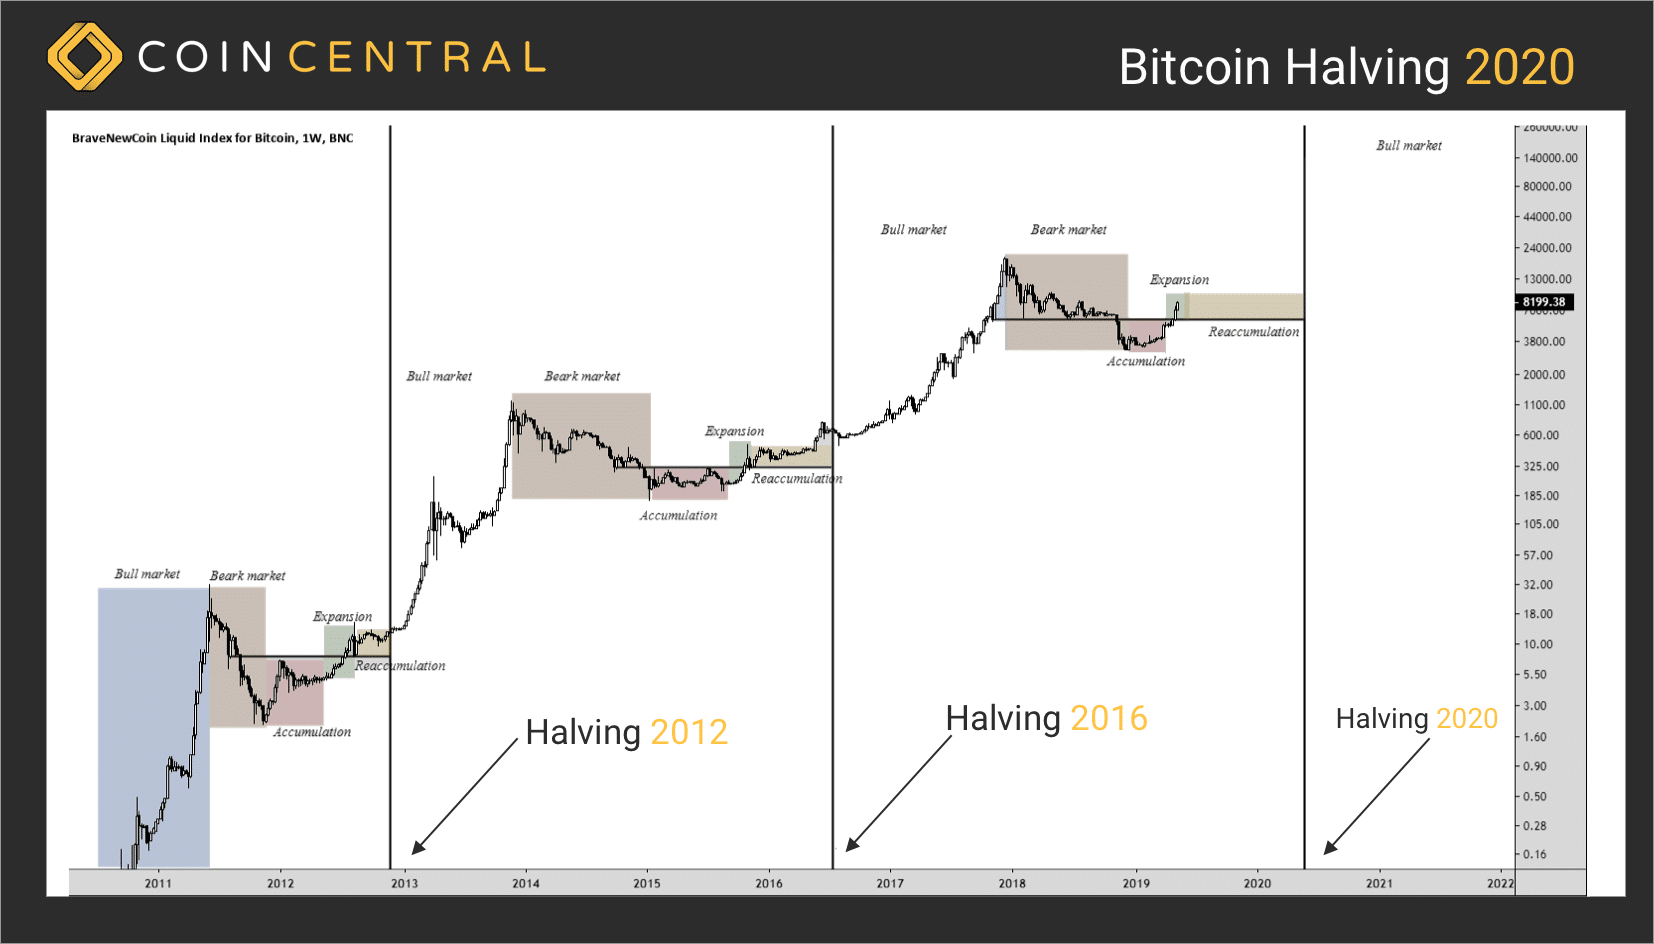 Kommer det att bli ett prishopp efter halvering av bitcoin 2020? Svaret kommer med tiden.